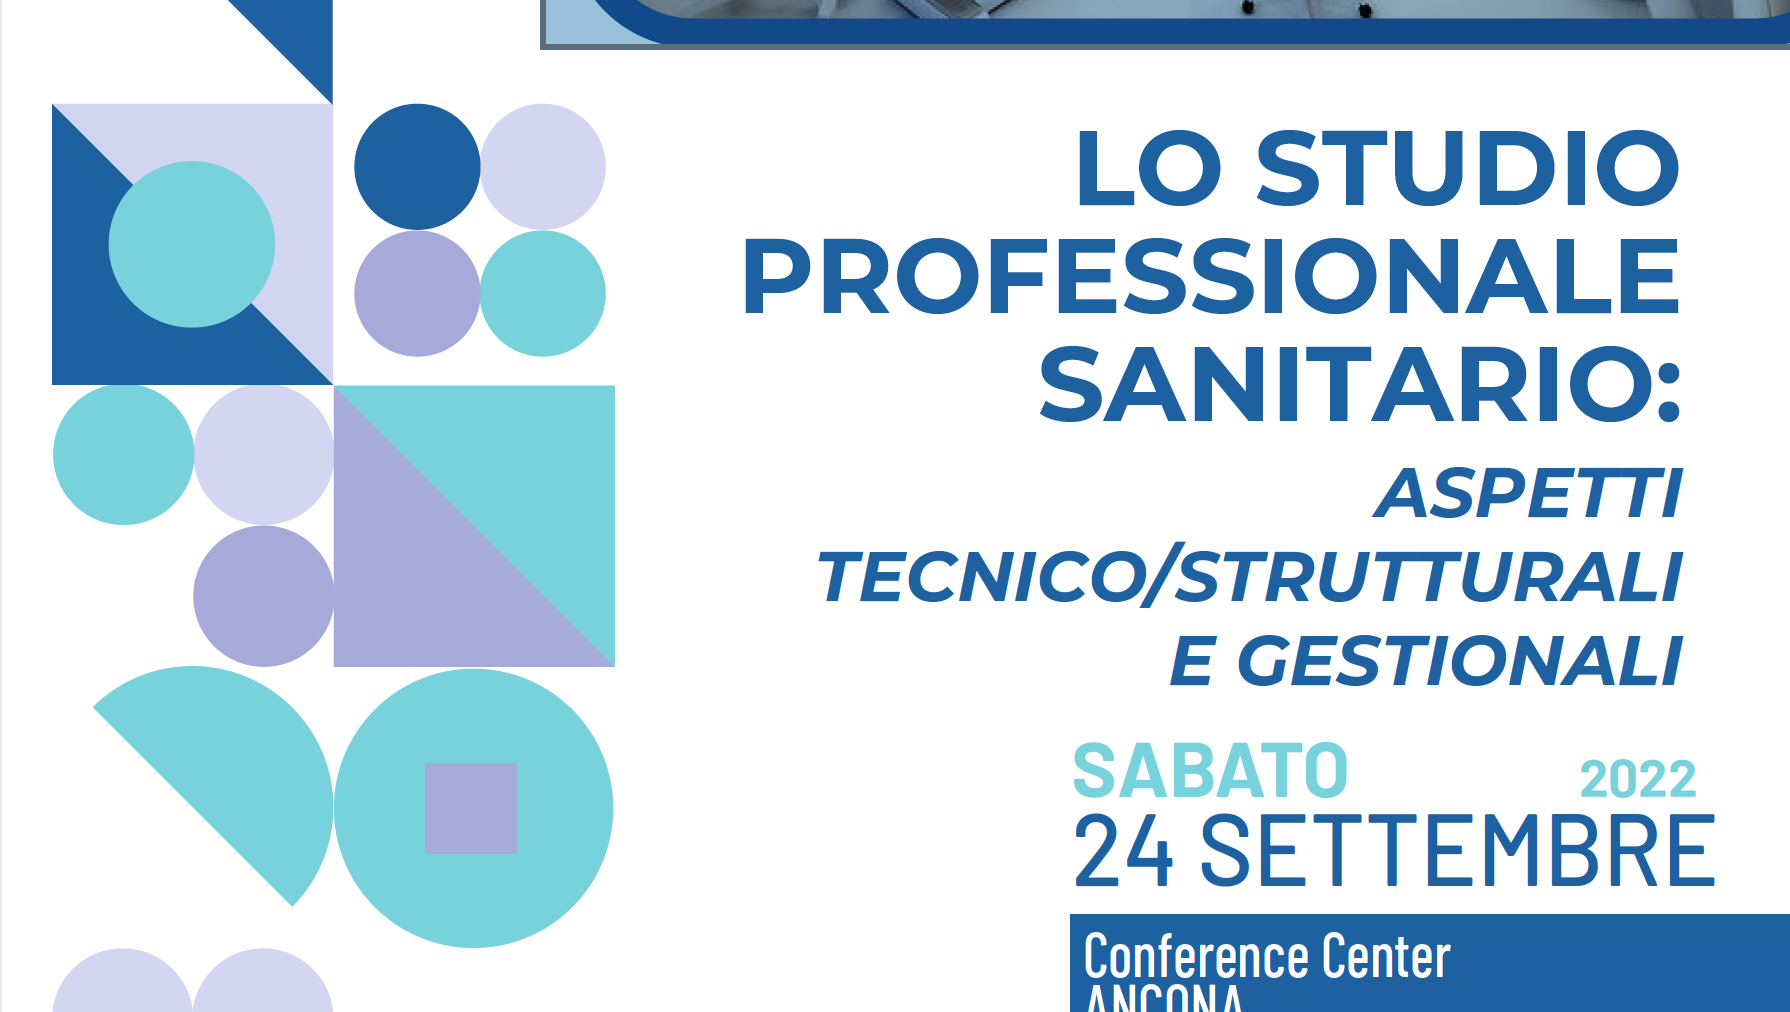 LO STUDIO PROFESSIONALE SANITARIO: ASPETTI TECNICO/STRUTTURALI E GESTIONALI 